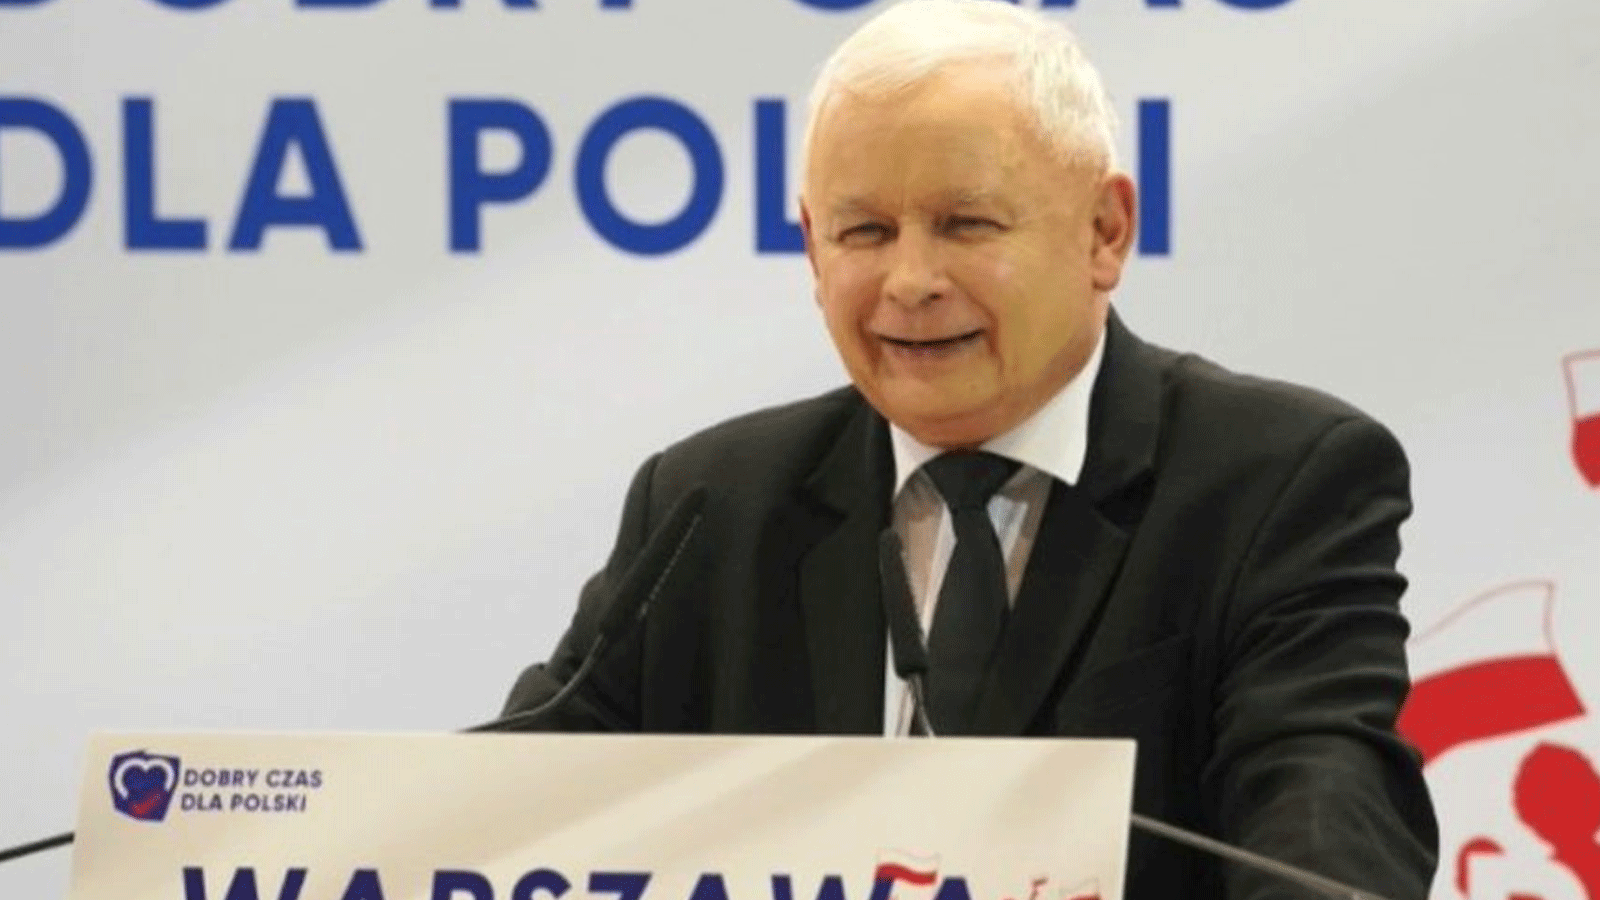 رئيس الحزب القومي المحافظ الحاكم في بولندا ياروسلاف كاتشينسكي